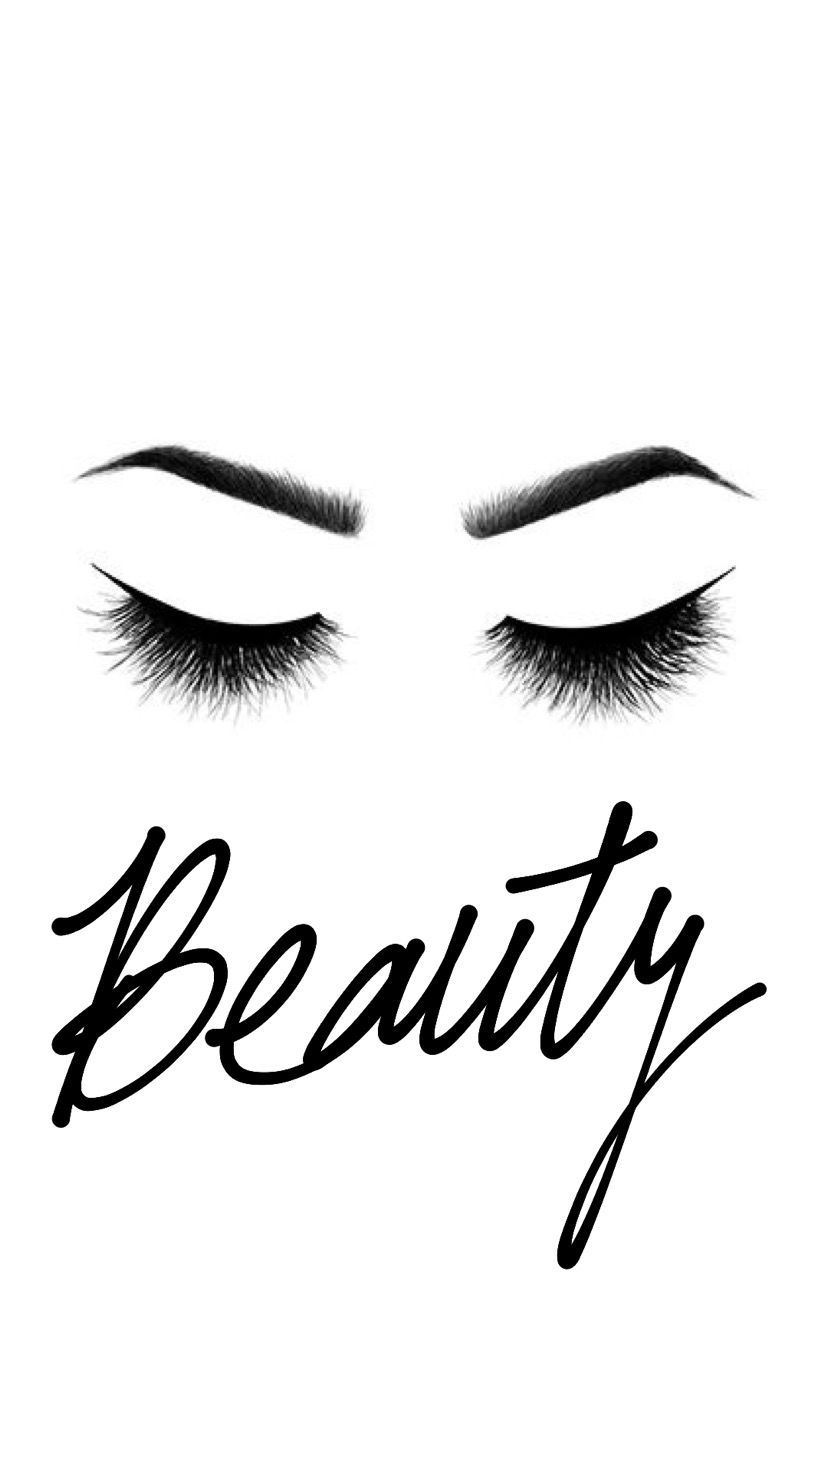 Beauty. Makeup wallpaper, Makeup drawing, Makeup artist logo